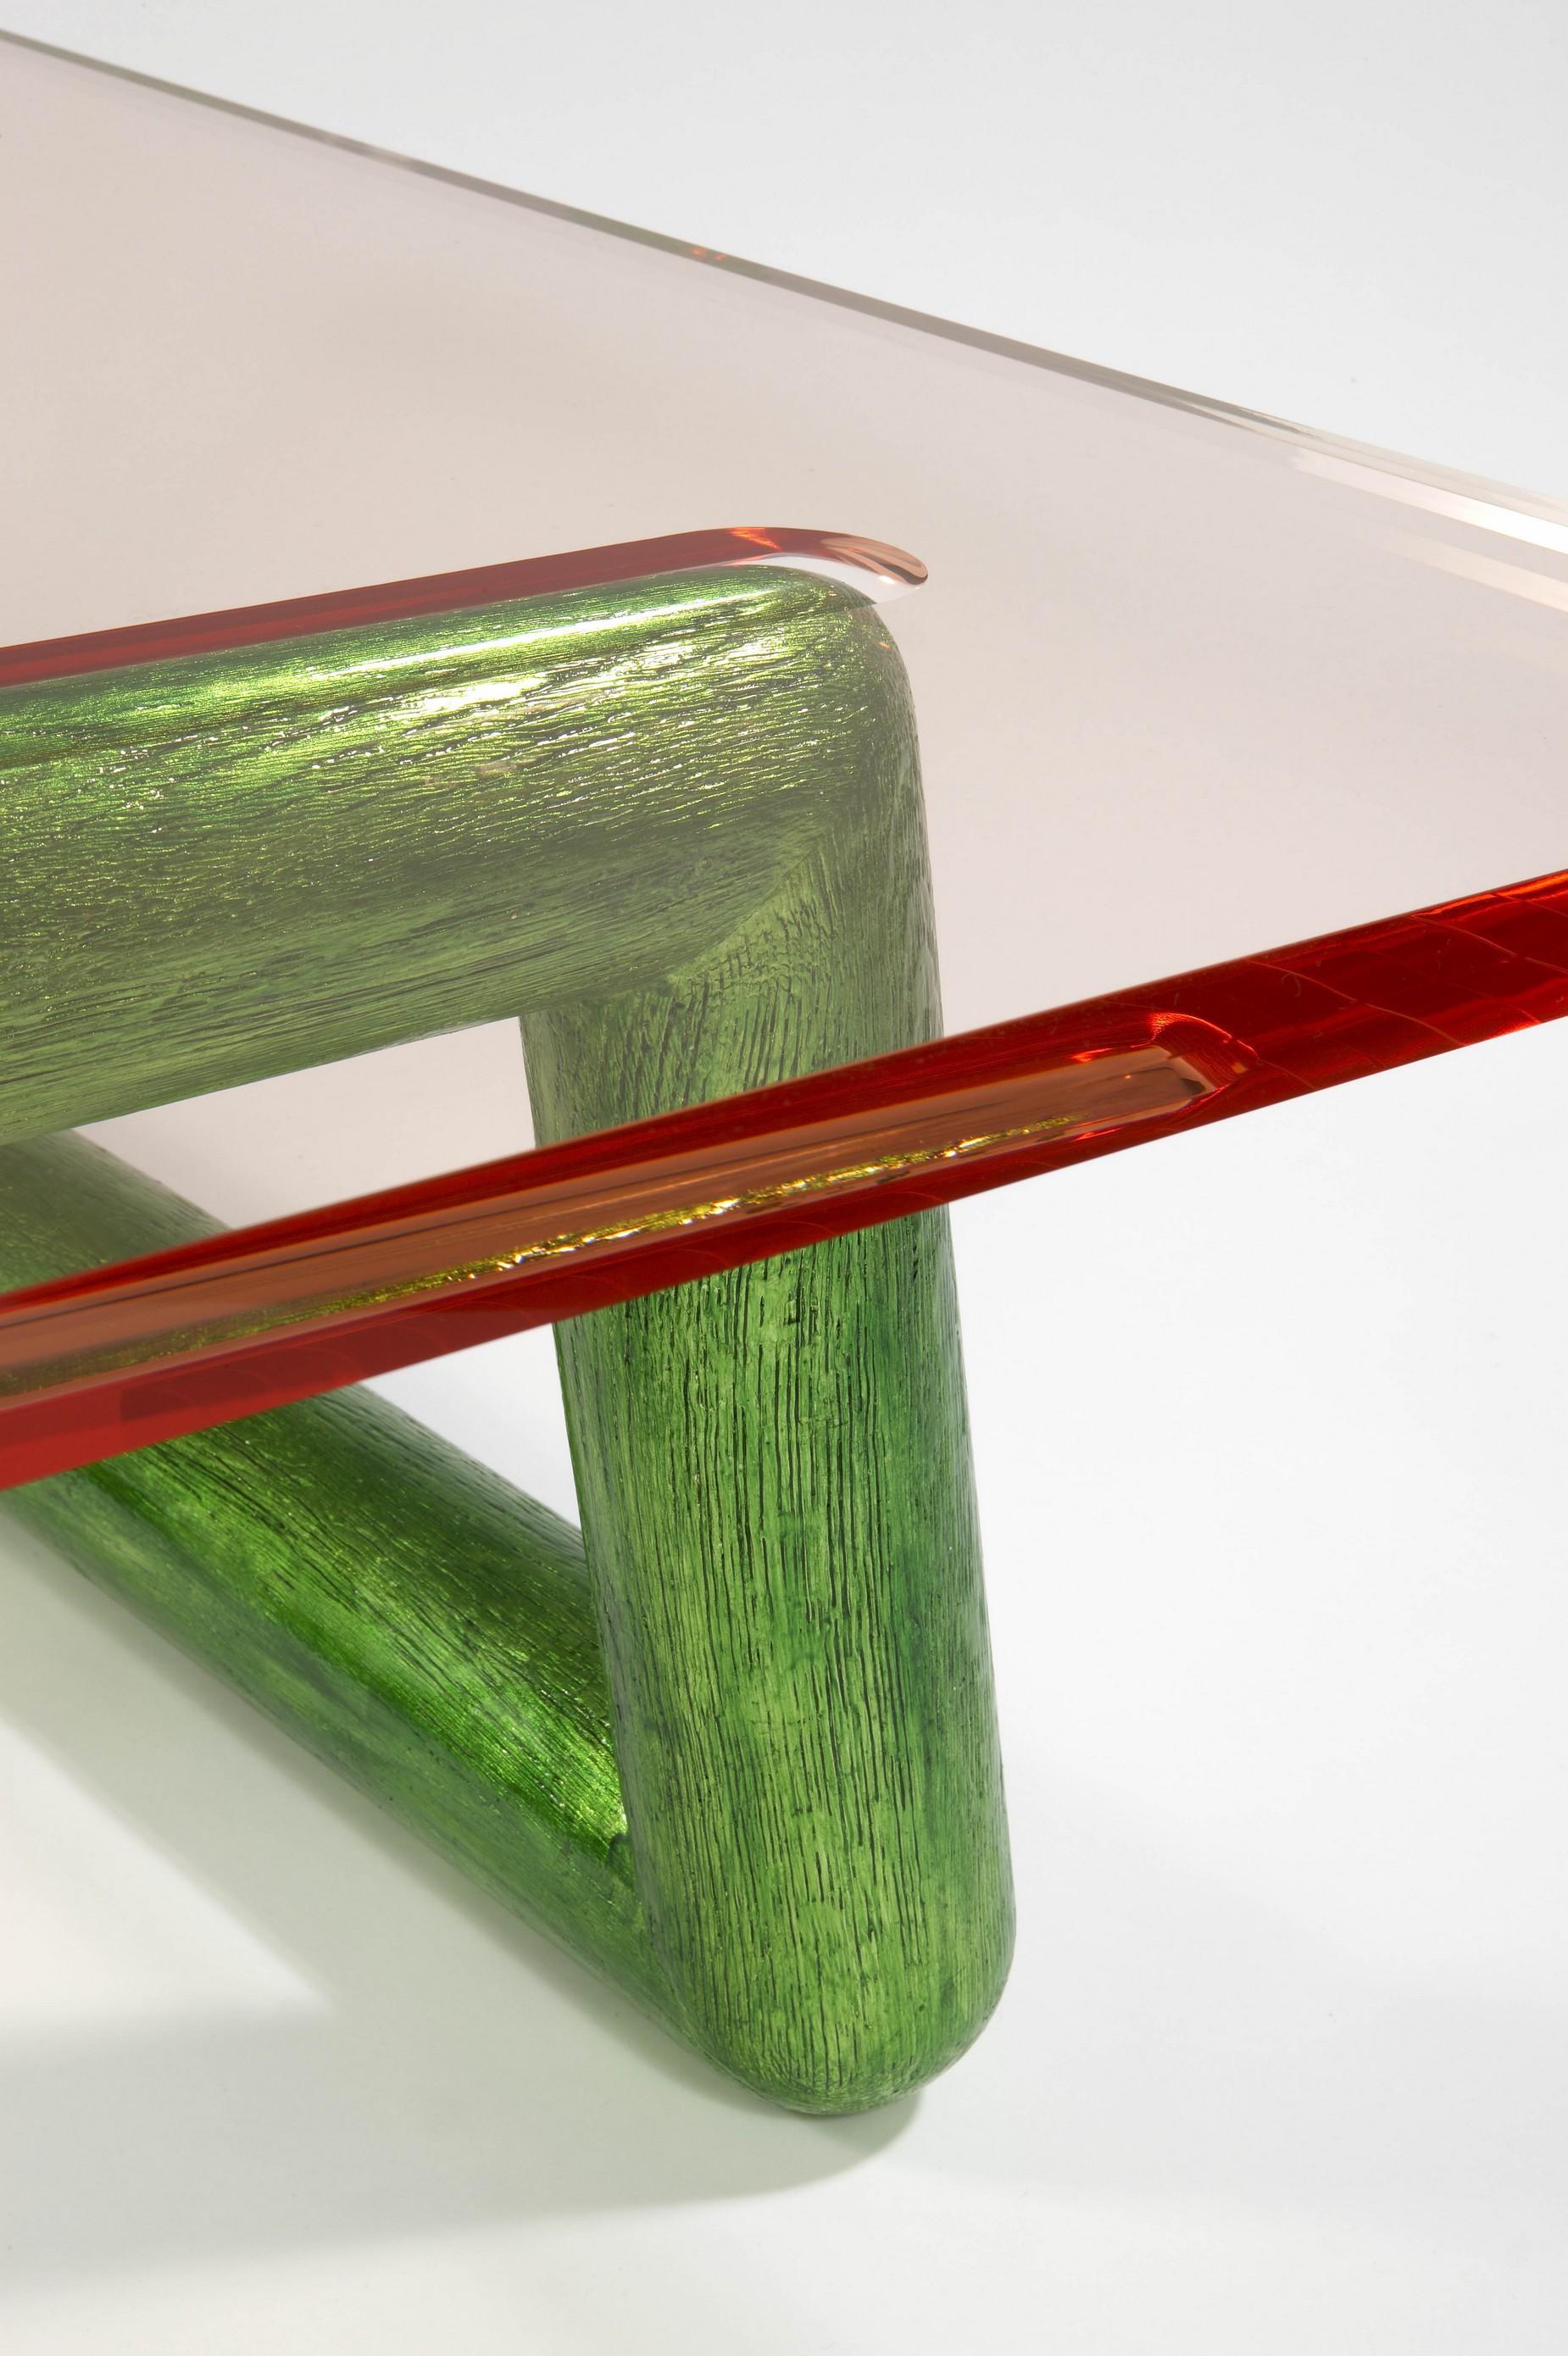 Contemporary Jelly Coffee Table by Mattia Bonetti, In stock